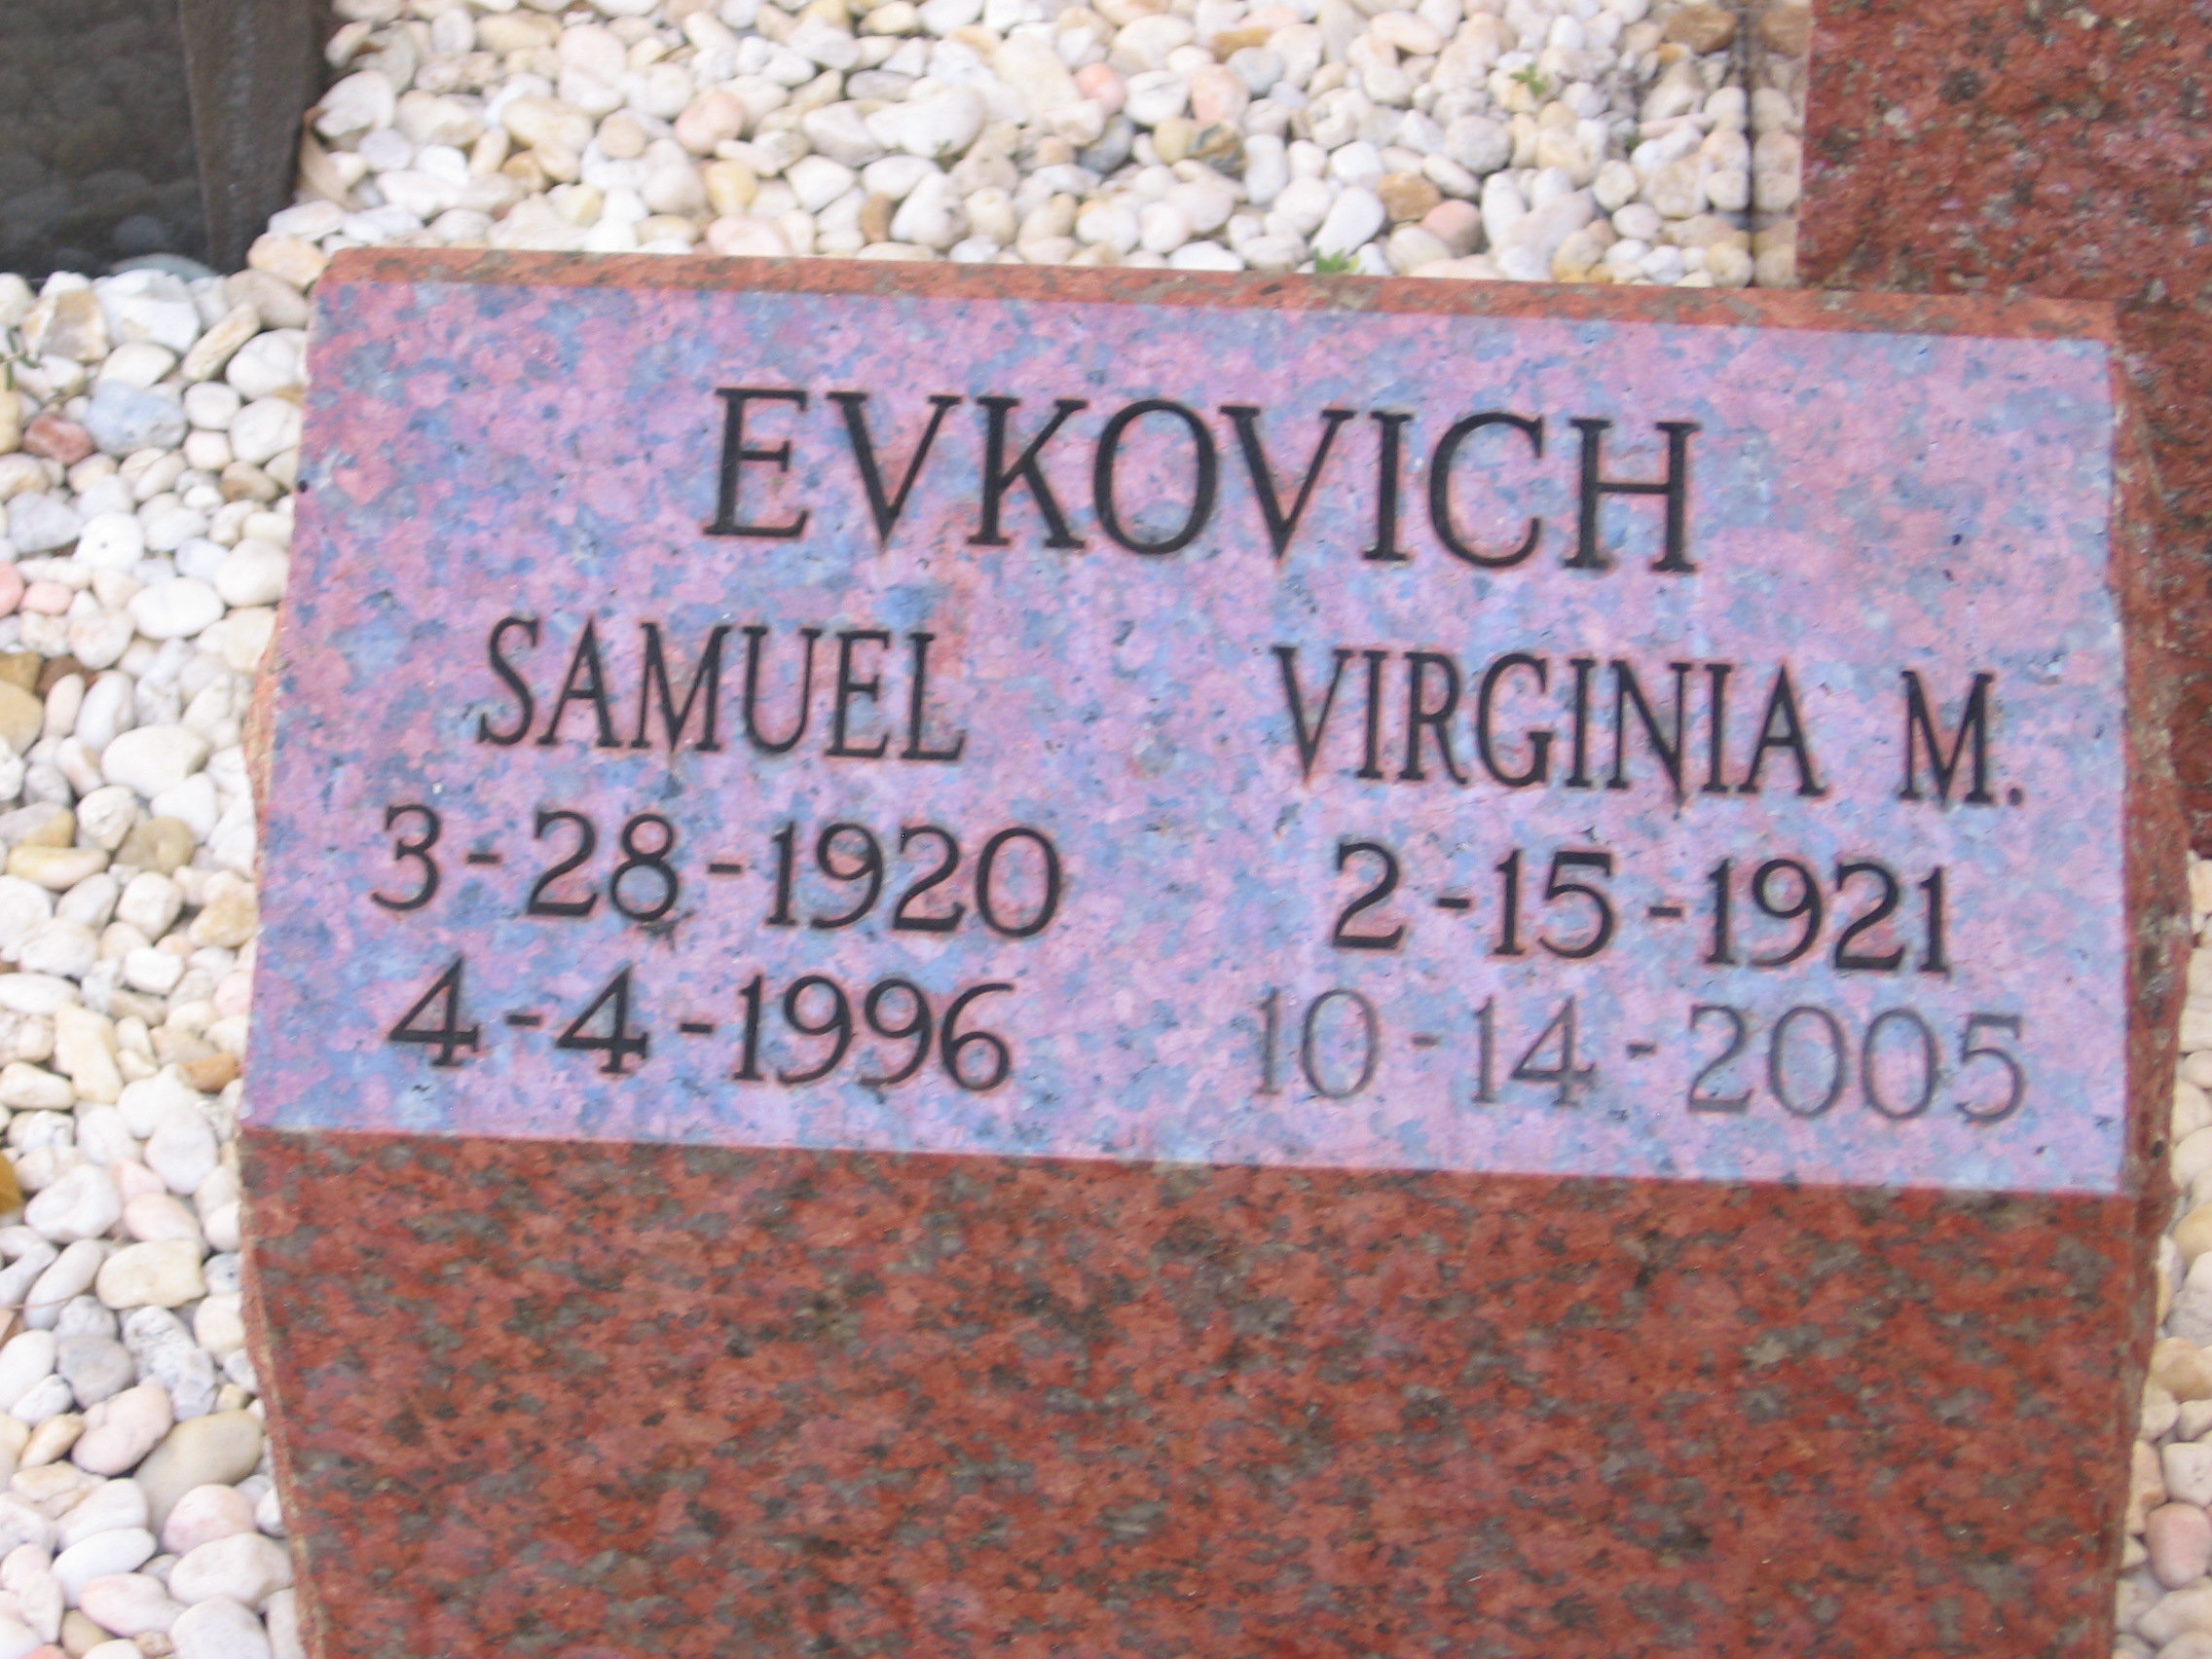 Samuel Evkovich